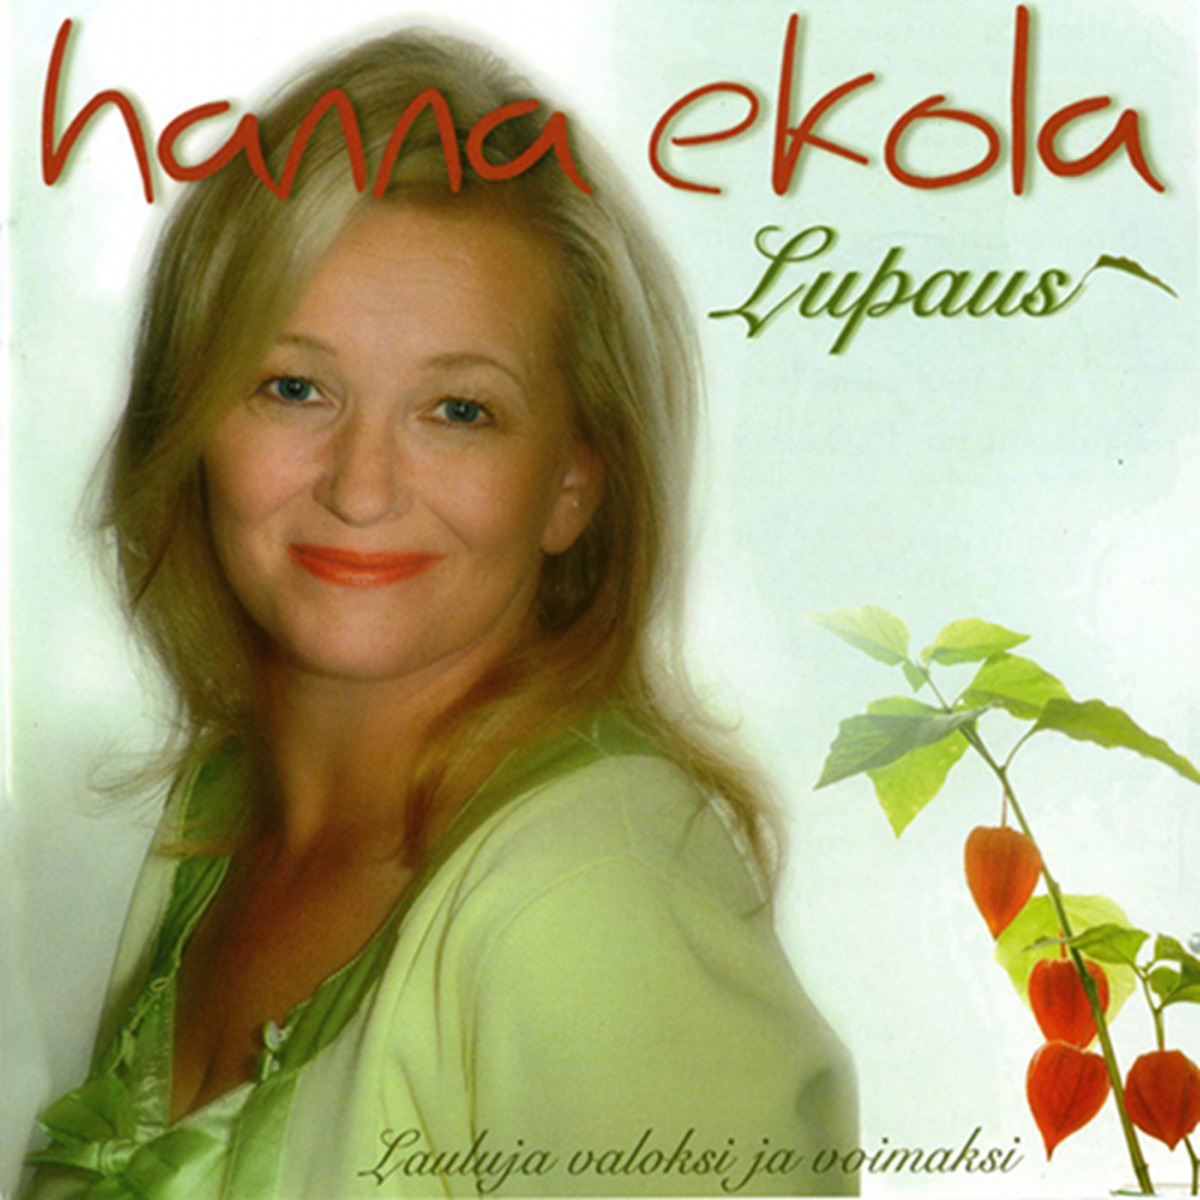 Enkelin Siipien Havinaa by Hanna Ekola on Apple Music